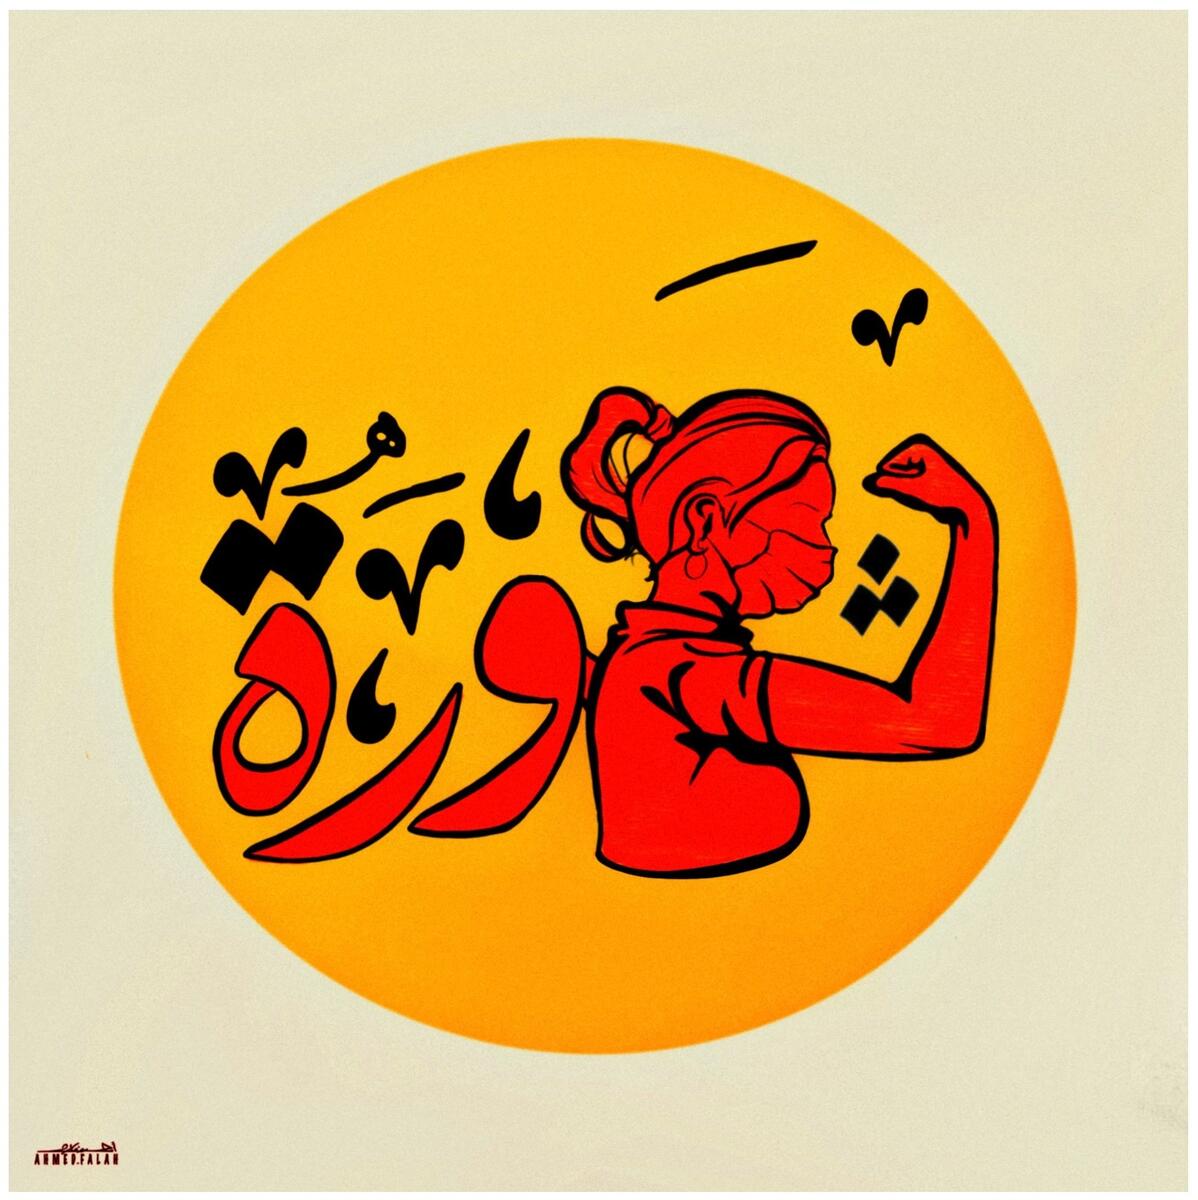 Ahmed Falah. Det arabiske ordet for "revolusjon" tegnet med motivet (hode, arm) som del av skriften. (Foto/Photo)